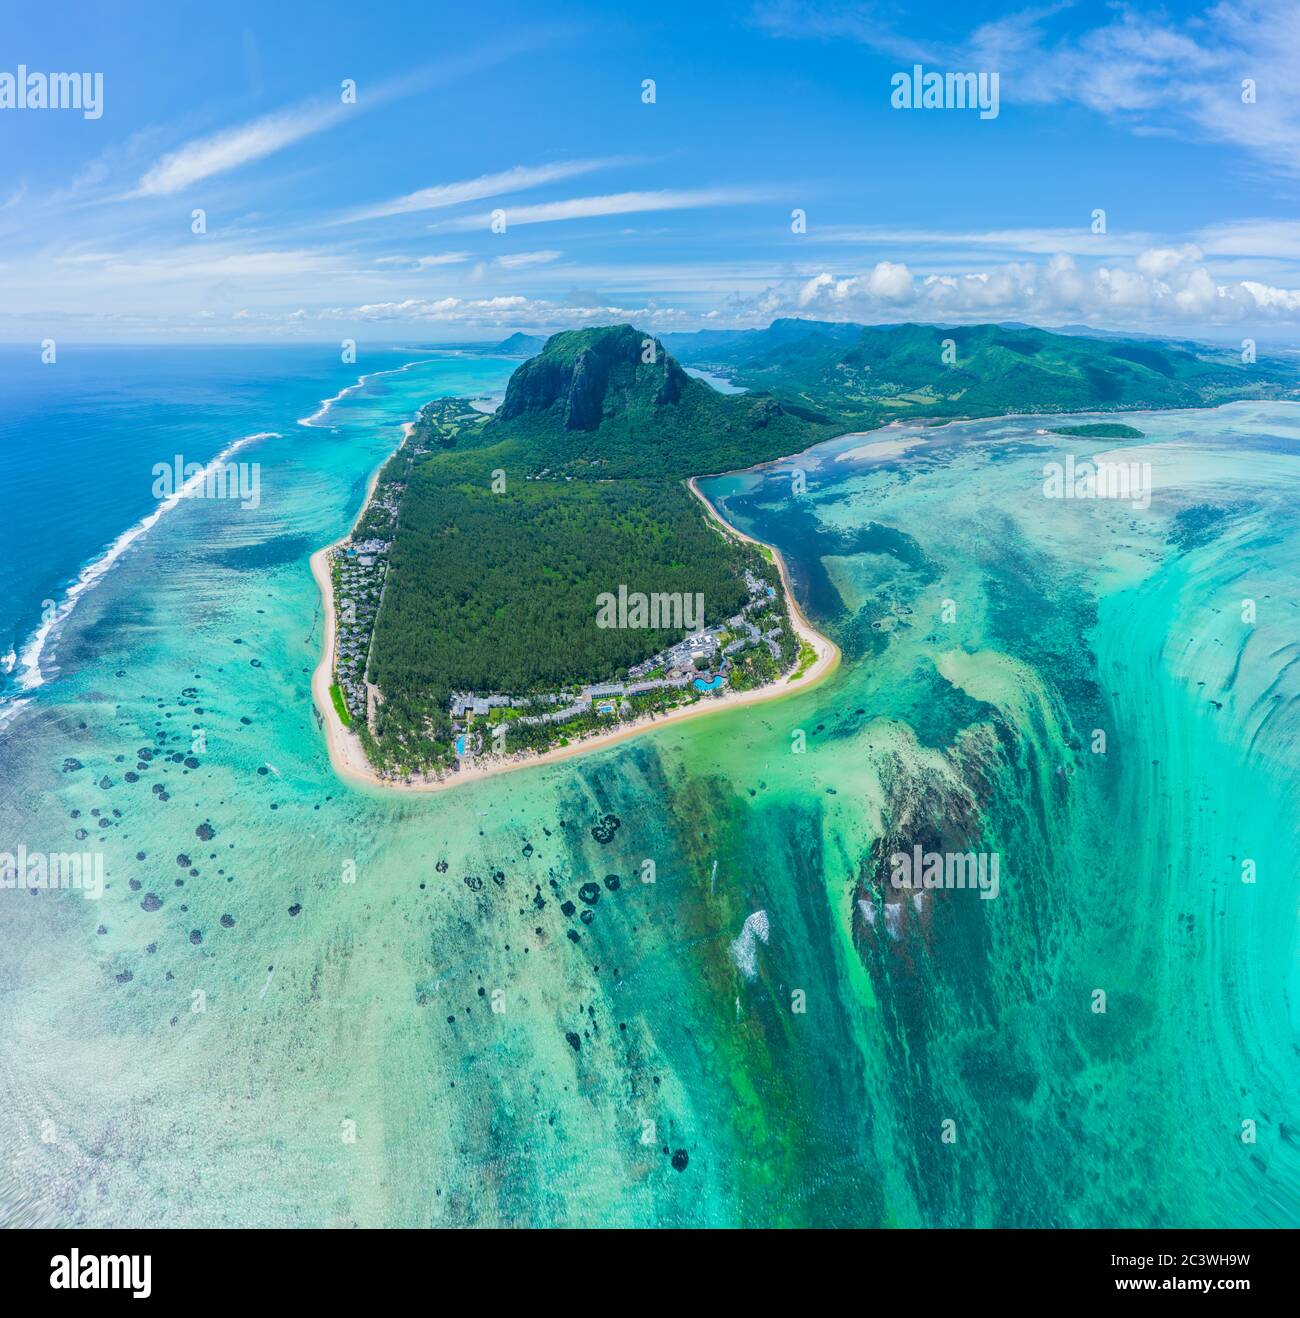 Vue aérienne de l'île Maurice et du célèbre mont le Morne Brabant, magnifique lagon bleu et chute d'eau sous-marine Banque D'Images